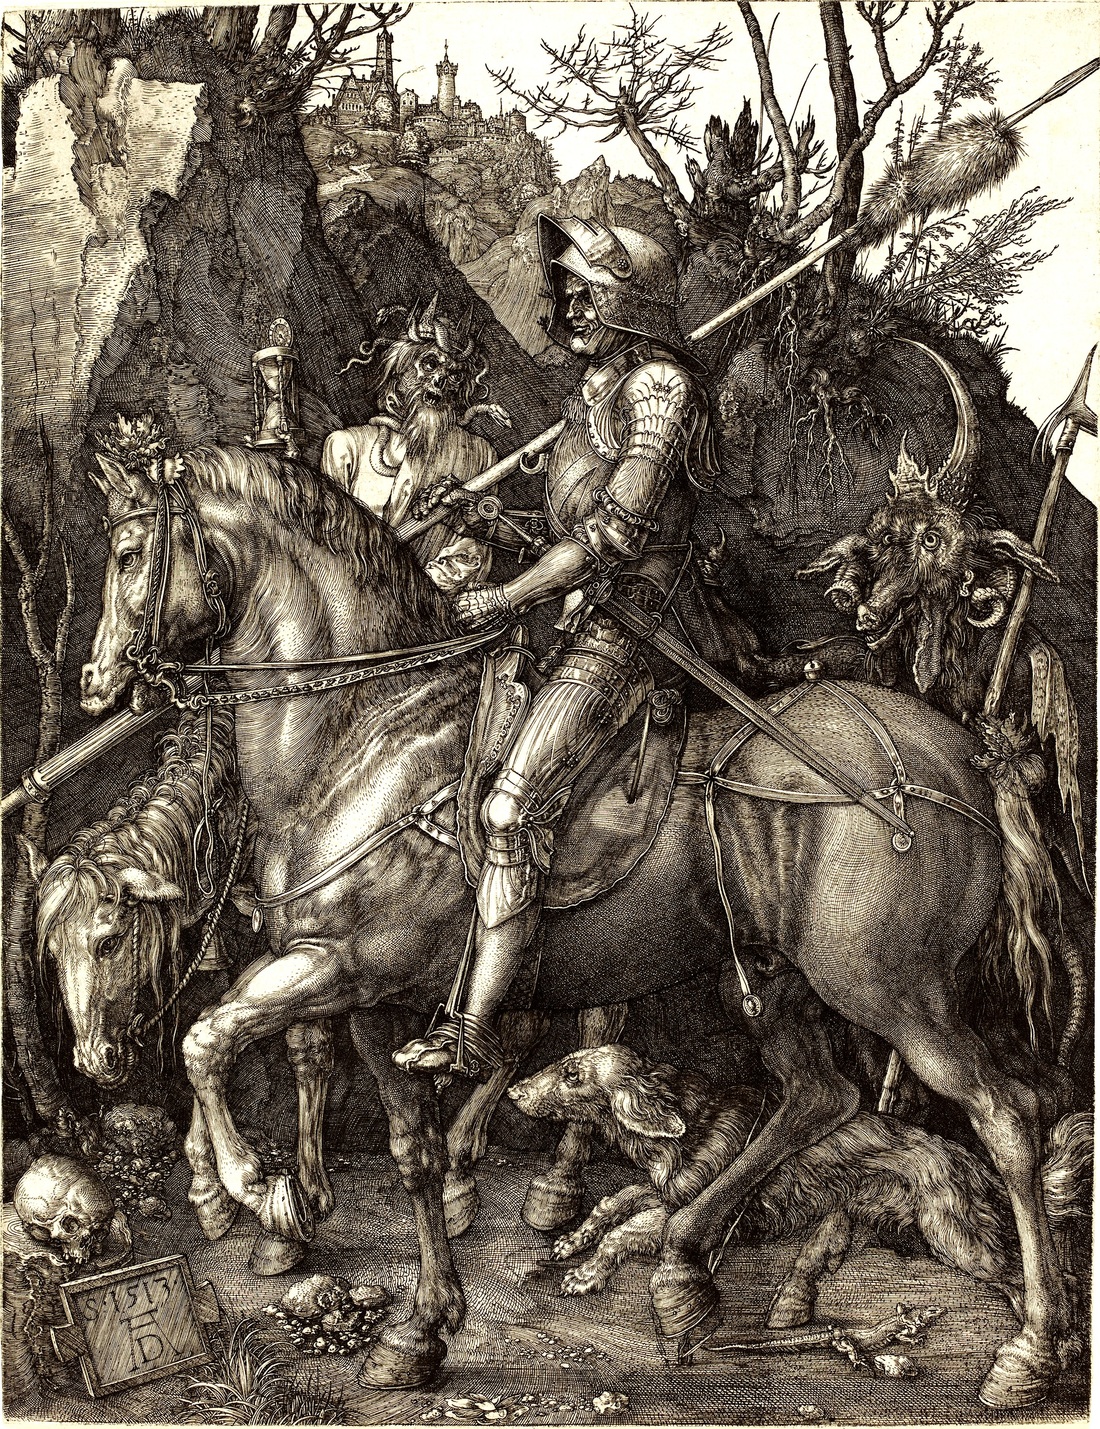 Pilt 1. Albrecht Düreri gravüür „Rüütel, surm ja kurat“ (Dürer, 1513)